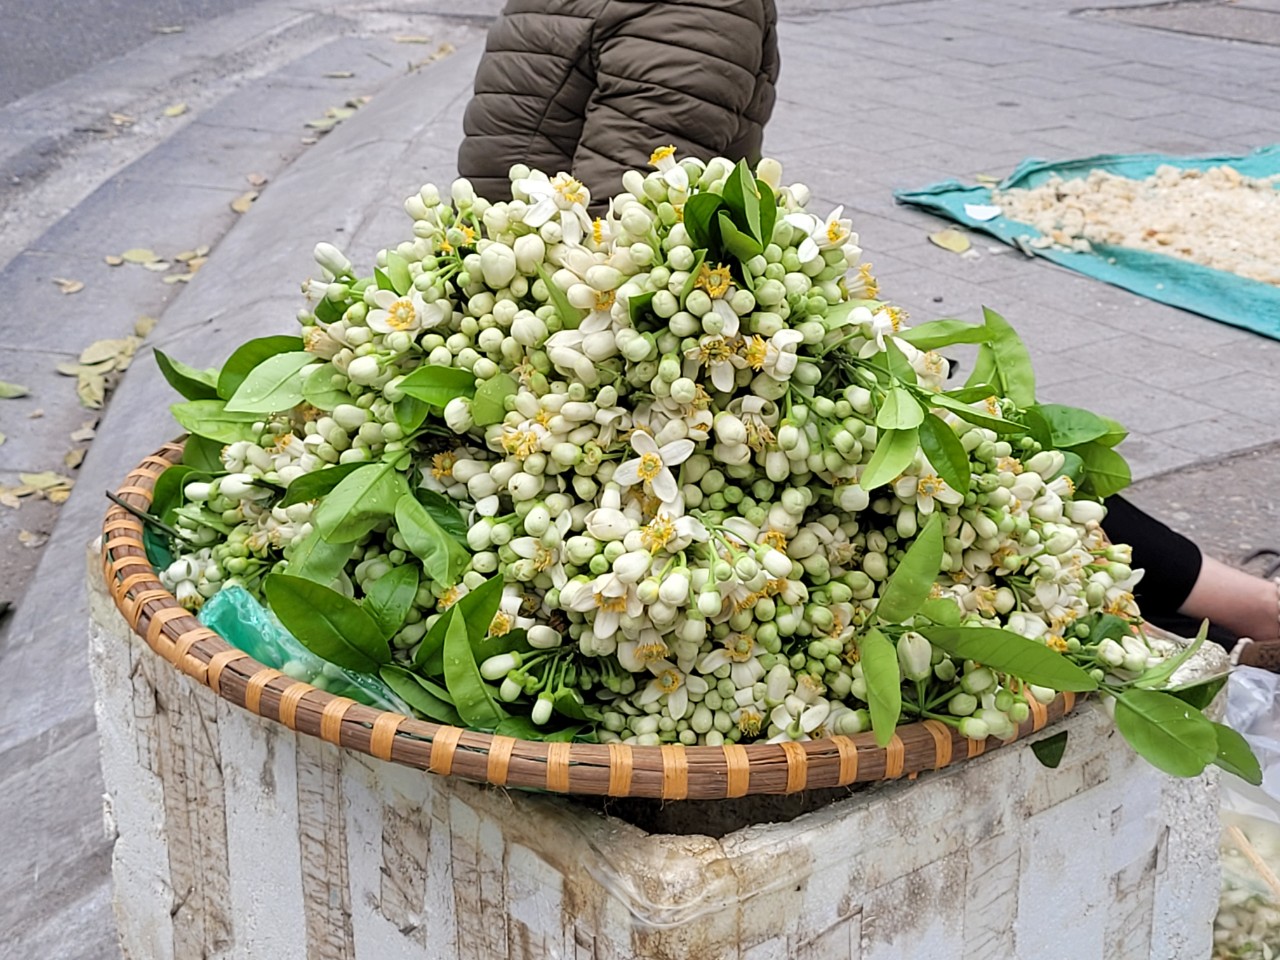 Hoa bưởi đắt ngang hoa nhập ngoại, có giá nửa triệu đồng/kg vẫn đắt hàng - Ảnh 2.